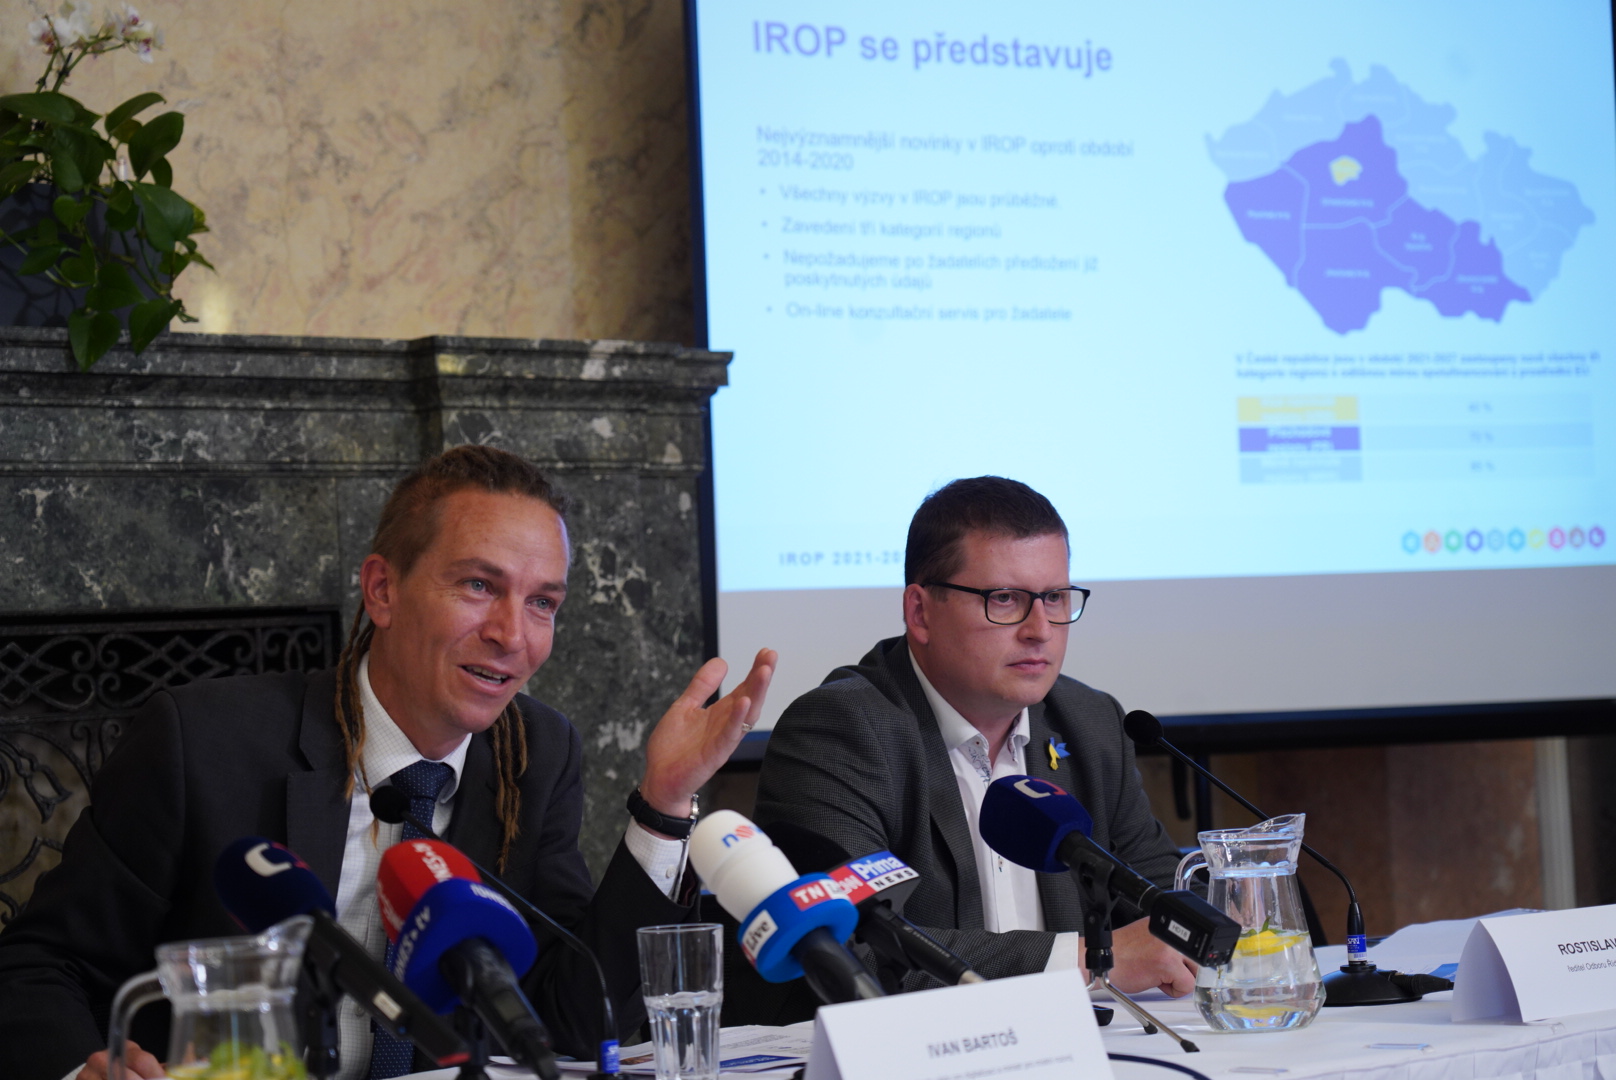 IROP 2021 – 2027 startuje. Připraveno je 117 miliard korun. První výzvy vyhlášeny